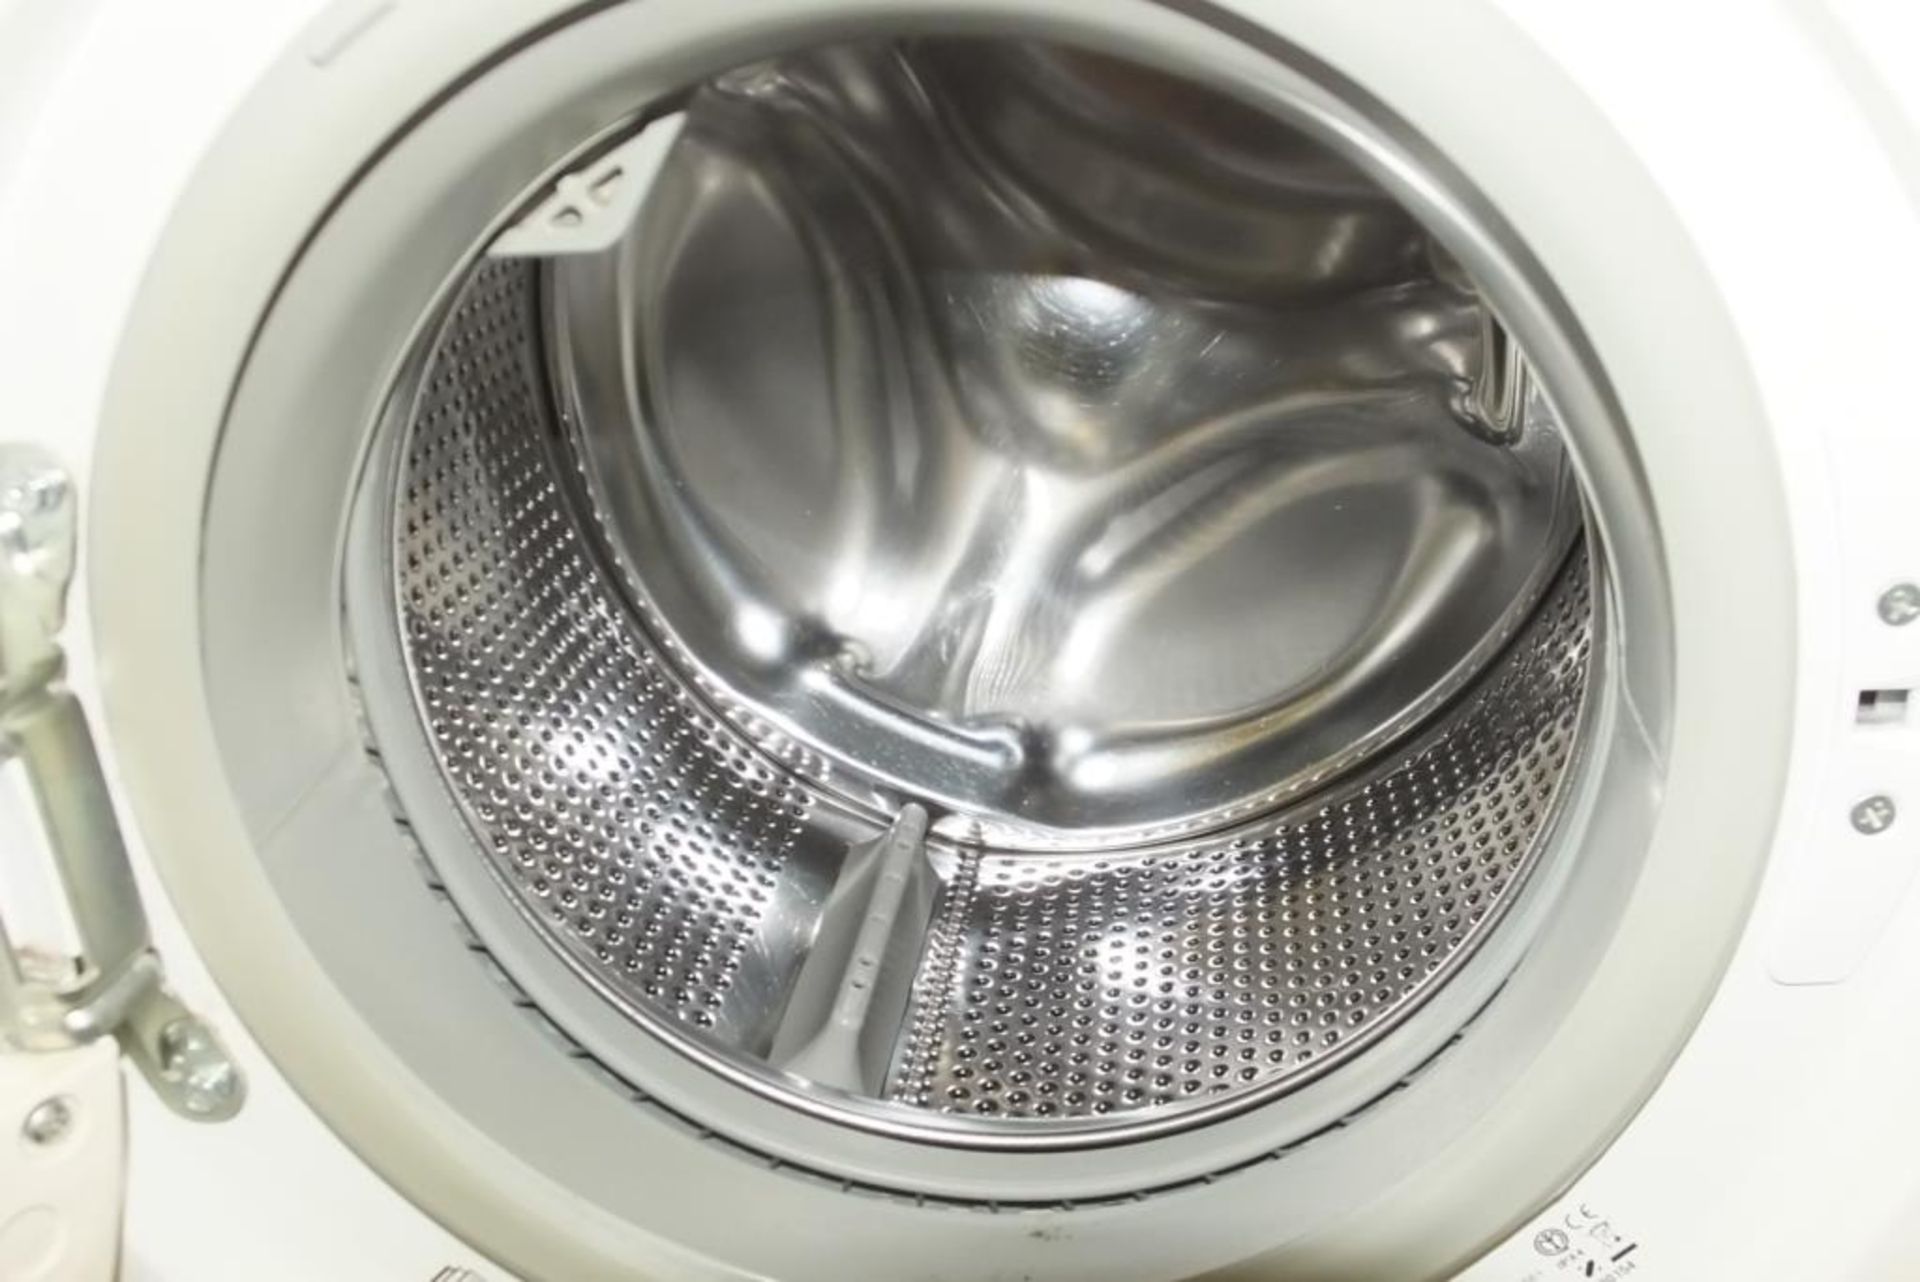 Zanussi ZWG 5125 Washing Machine - Image 2 of 2